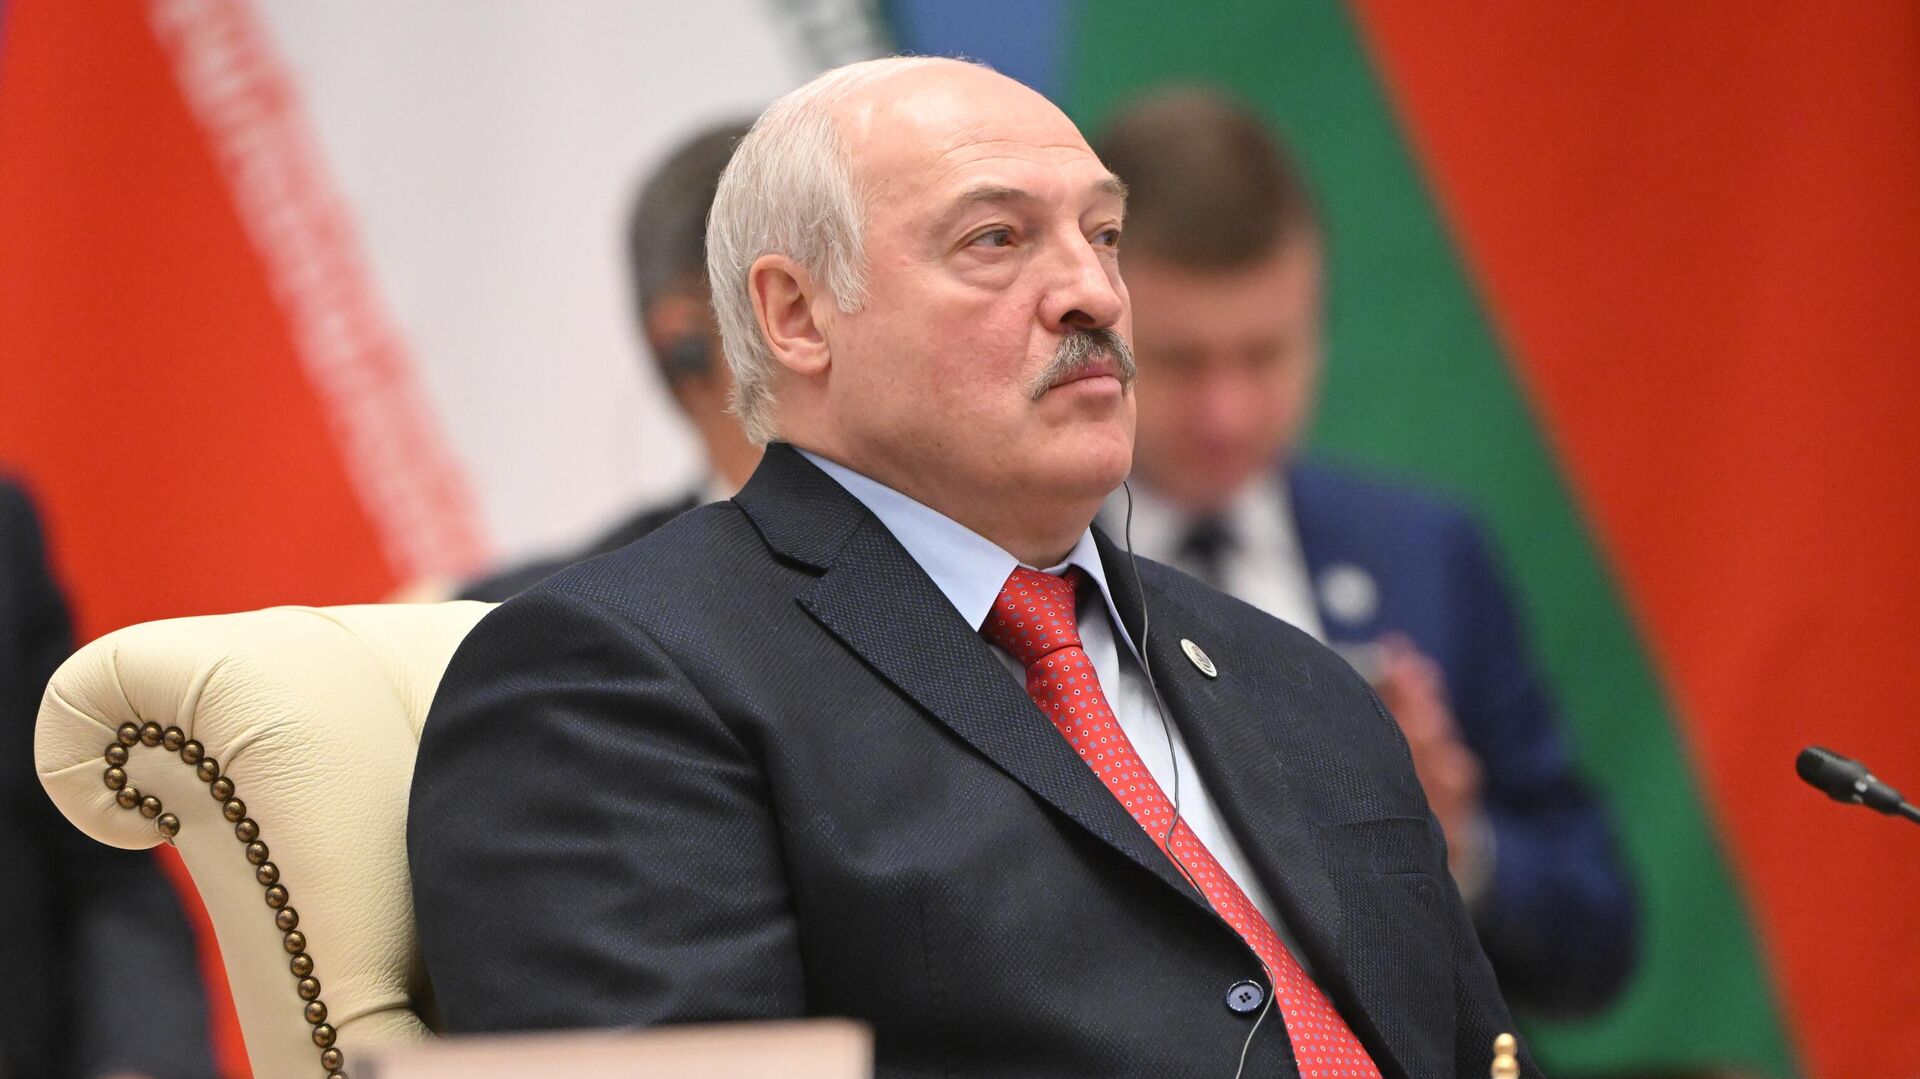 Лукашенко прокомментировал новую помощь США Украине